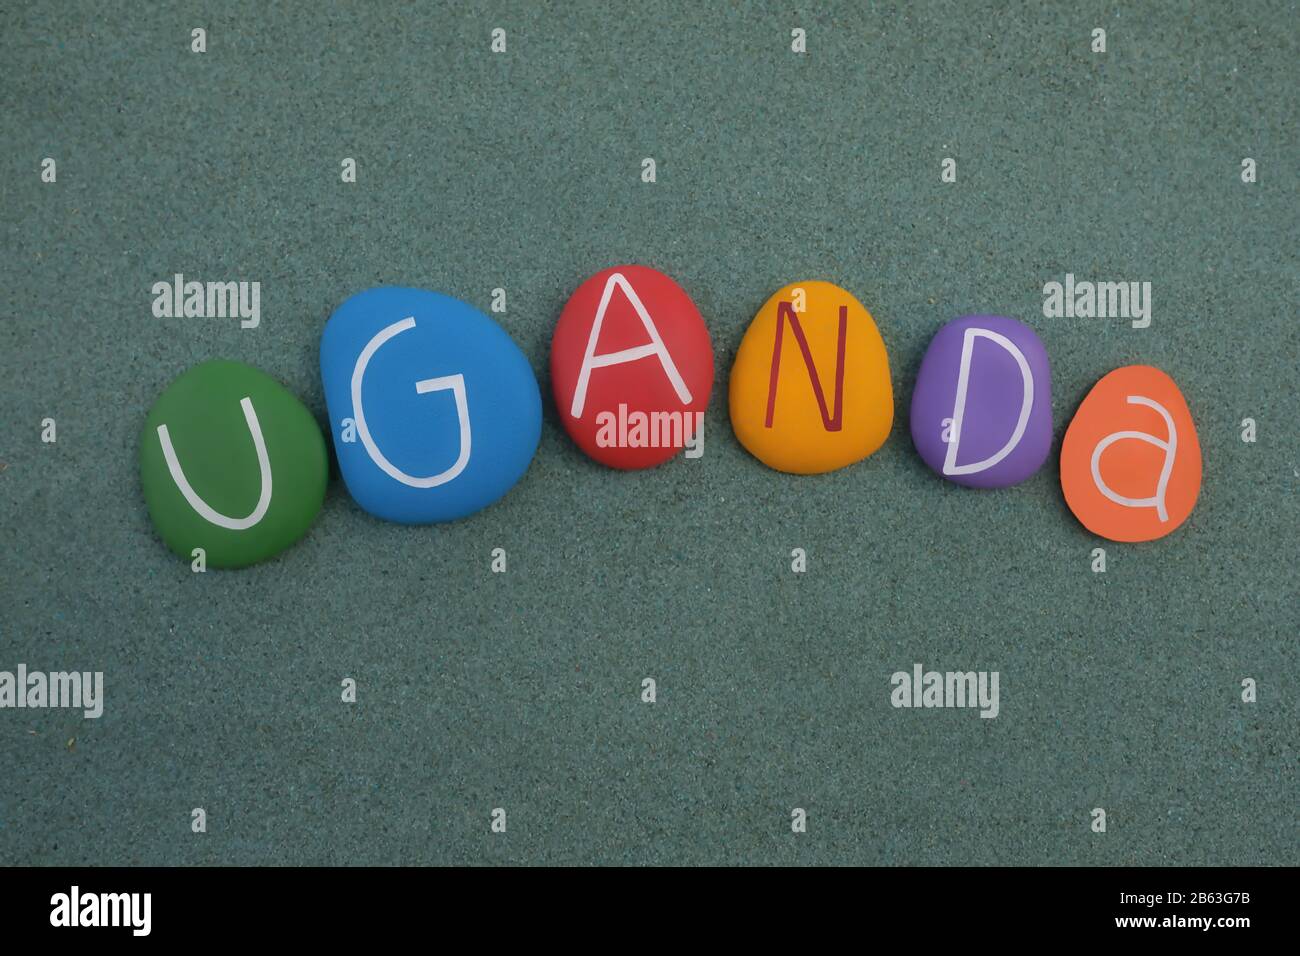 Uganda país en el este-centro de África, recuerdo con letras de piedra multicolor sobre arena verde Foto de stock